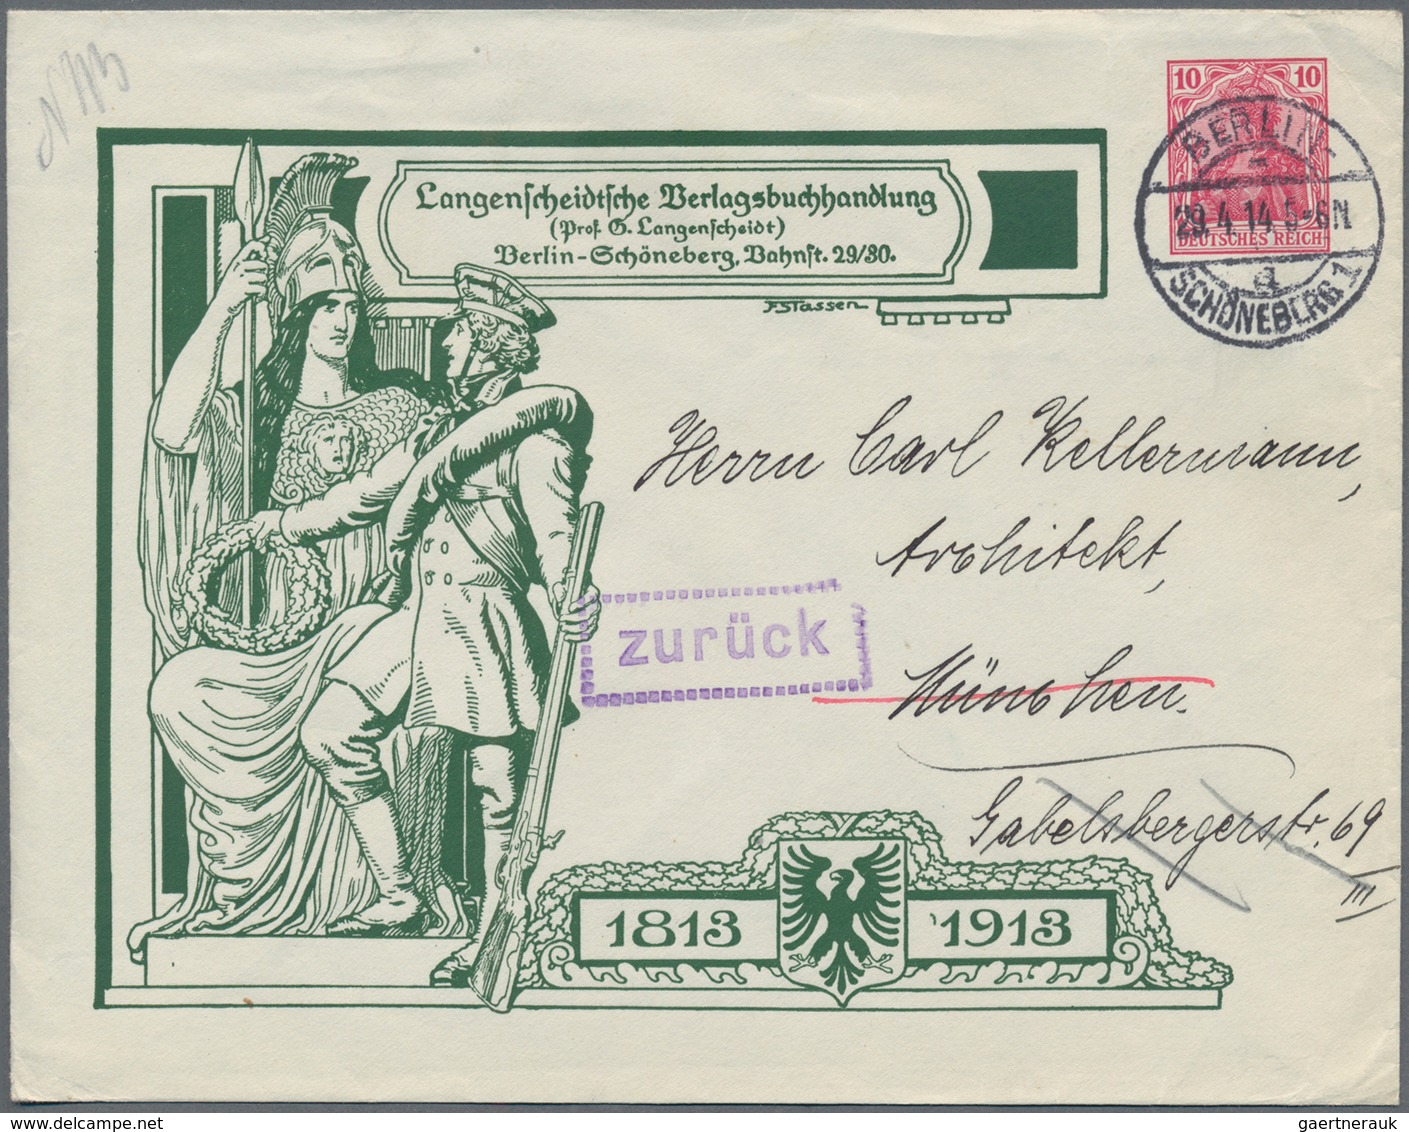 Deutsches Reich: 1872/1932, ca. 125 Briefe und Karten sowie ein kleines Album "Ein Jahr Krieg in 100